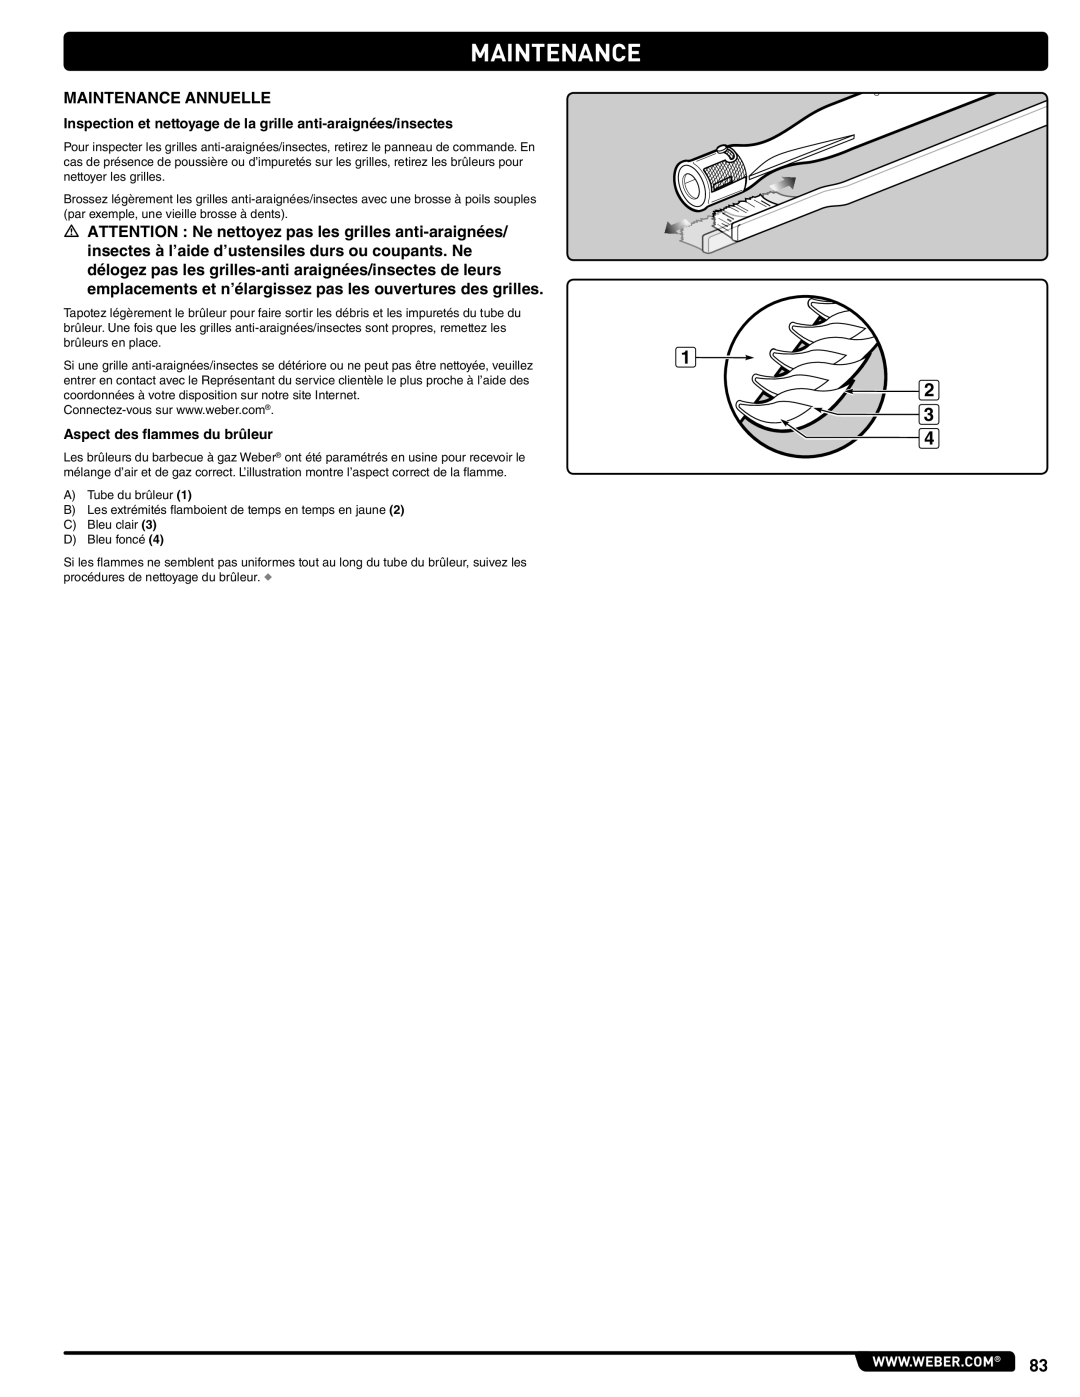 Summit 56214 manual Maintenance Annuelle, Inspection et nettoyage de la grille anti-araignées/insectes 